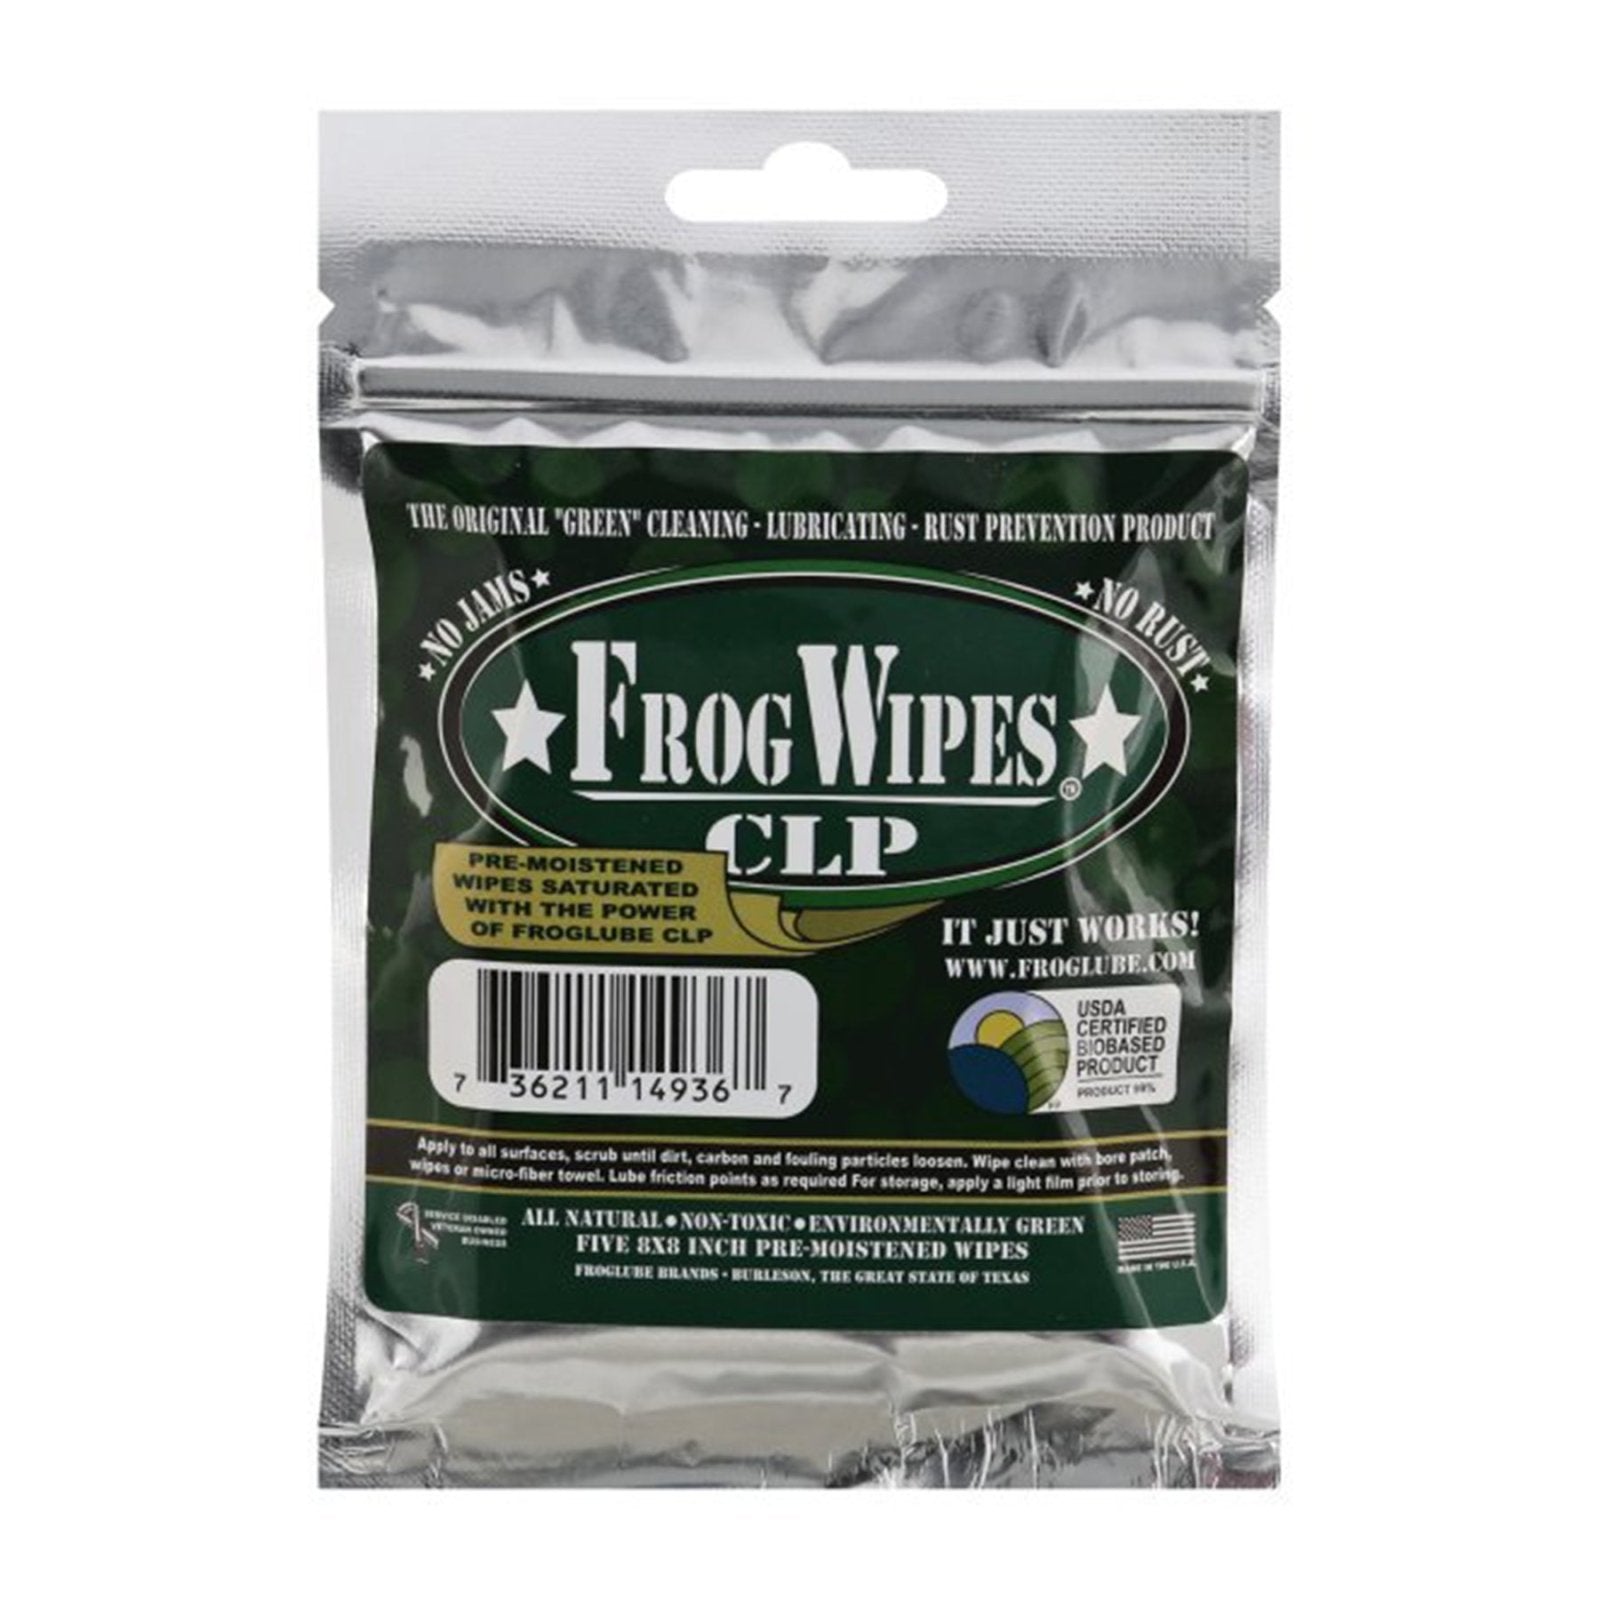 FrogLube Products - Northwest Safe